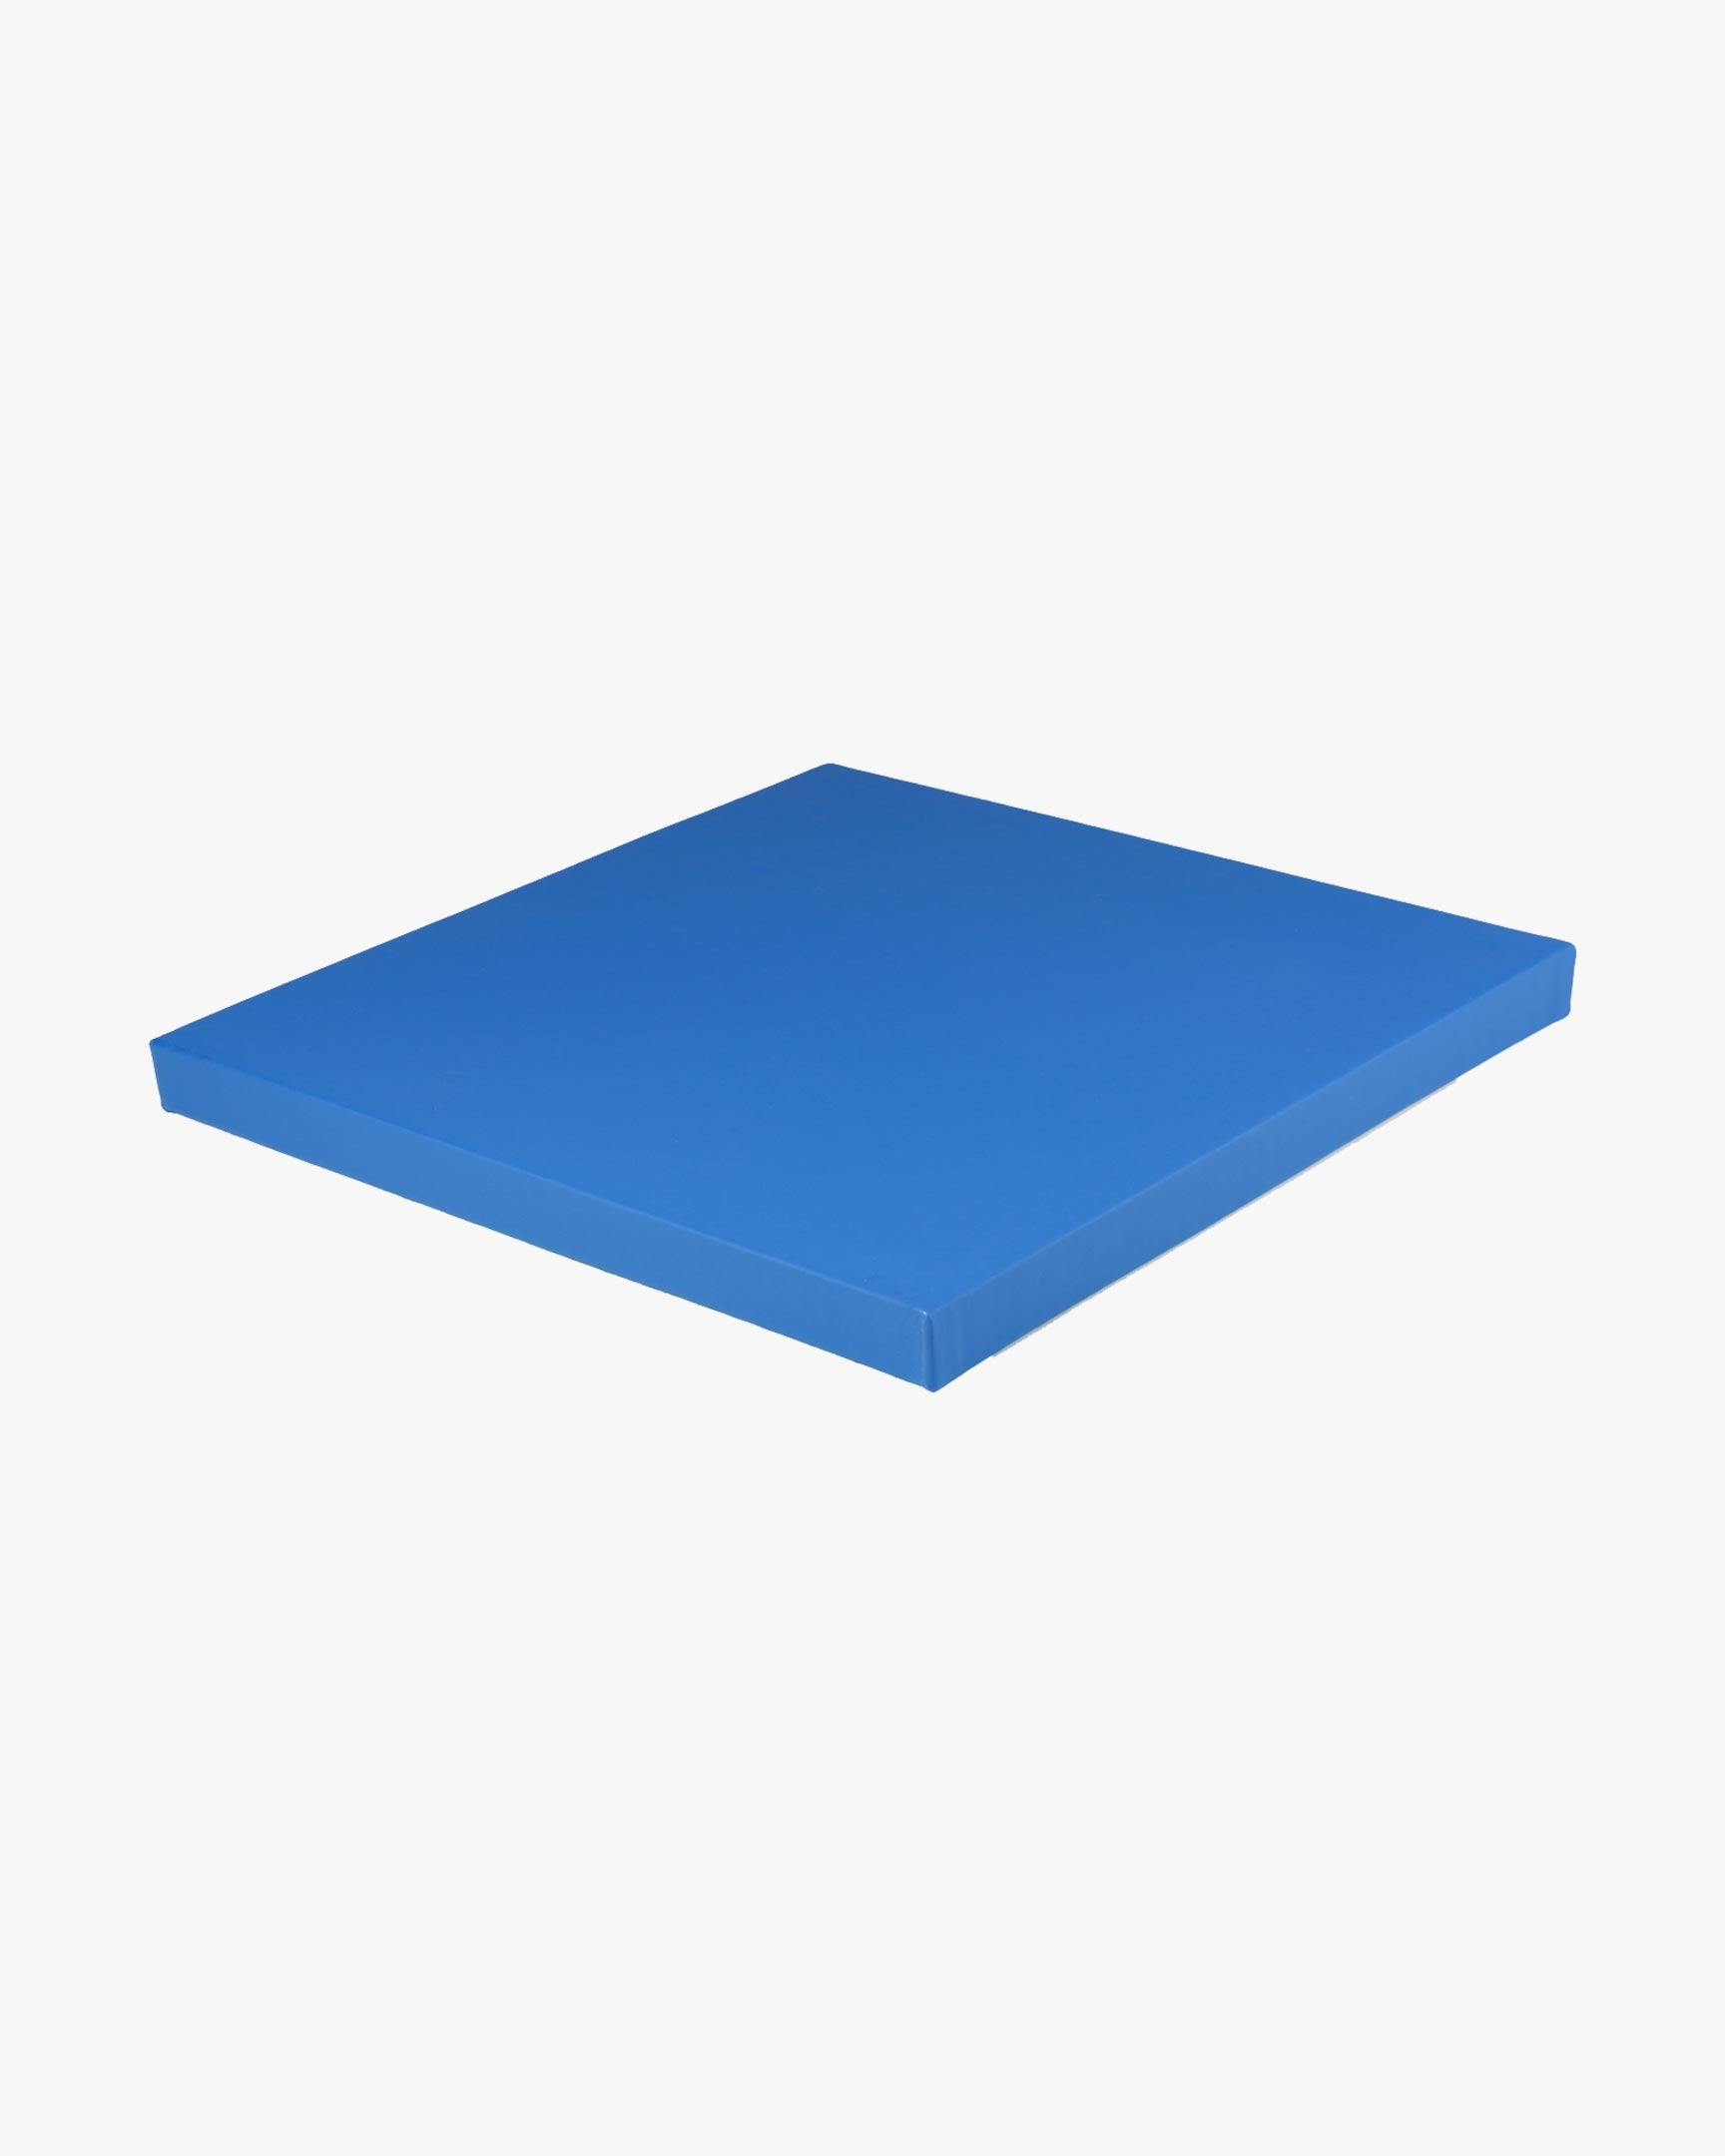 Smooth Tile Mat 1m x 1m x 1.5" Blue